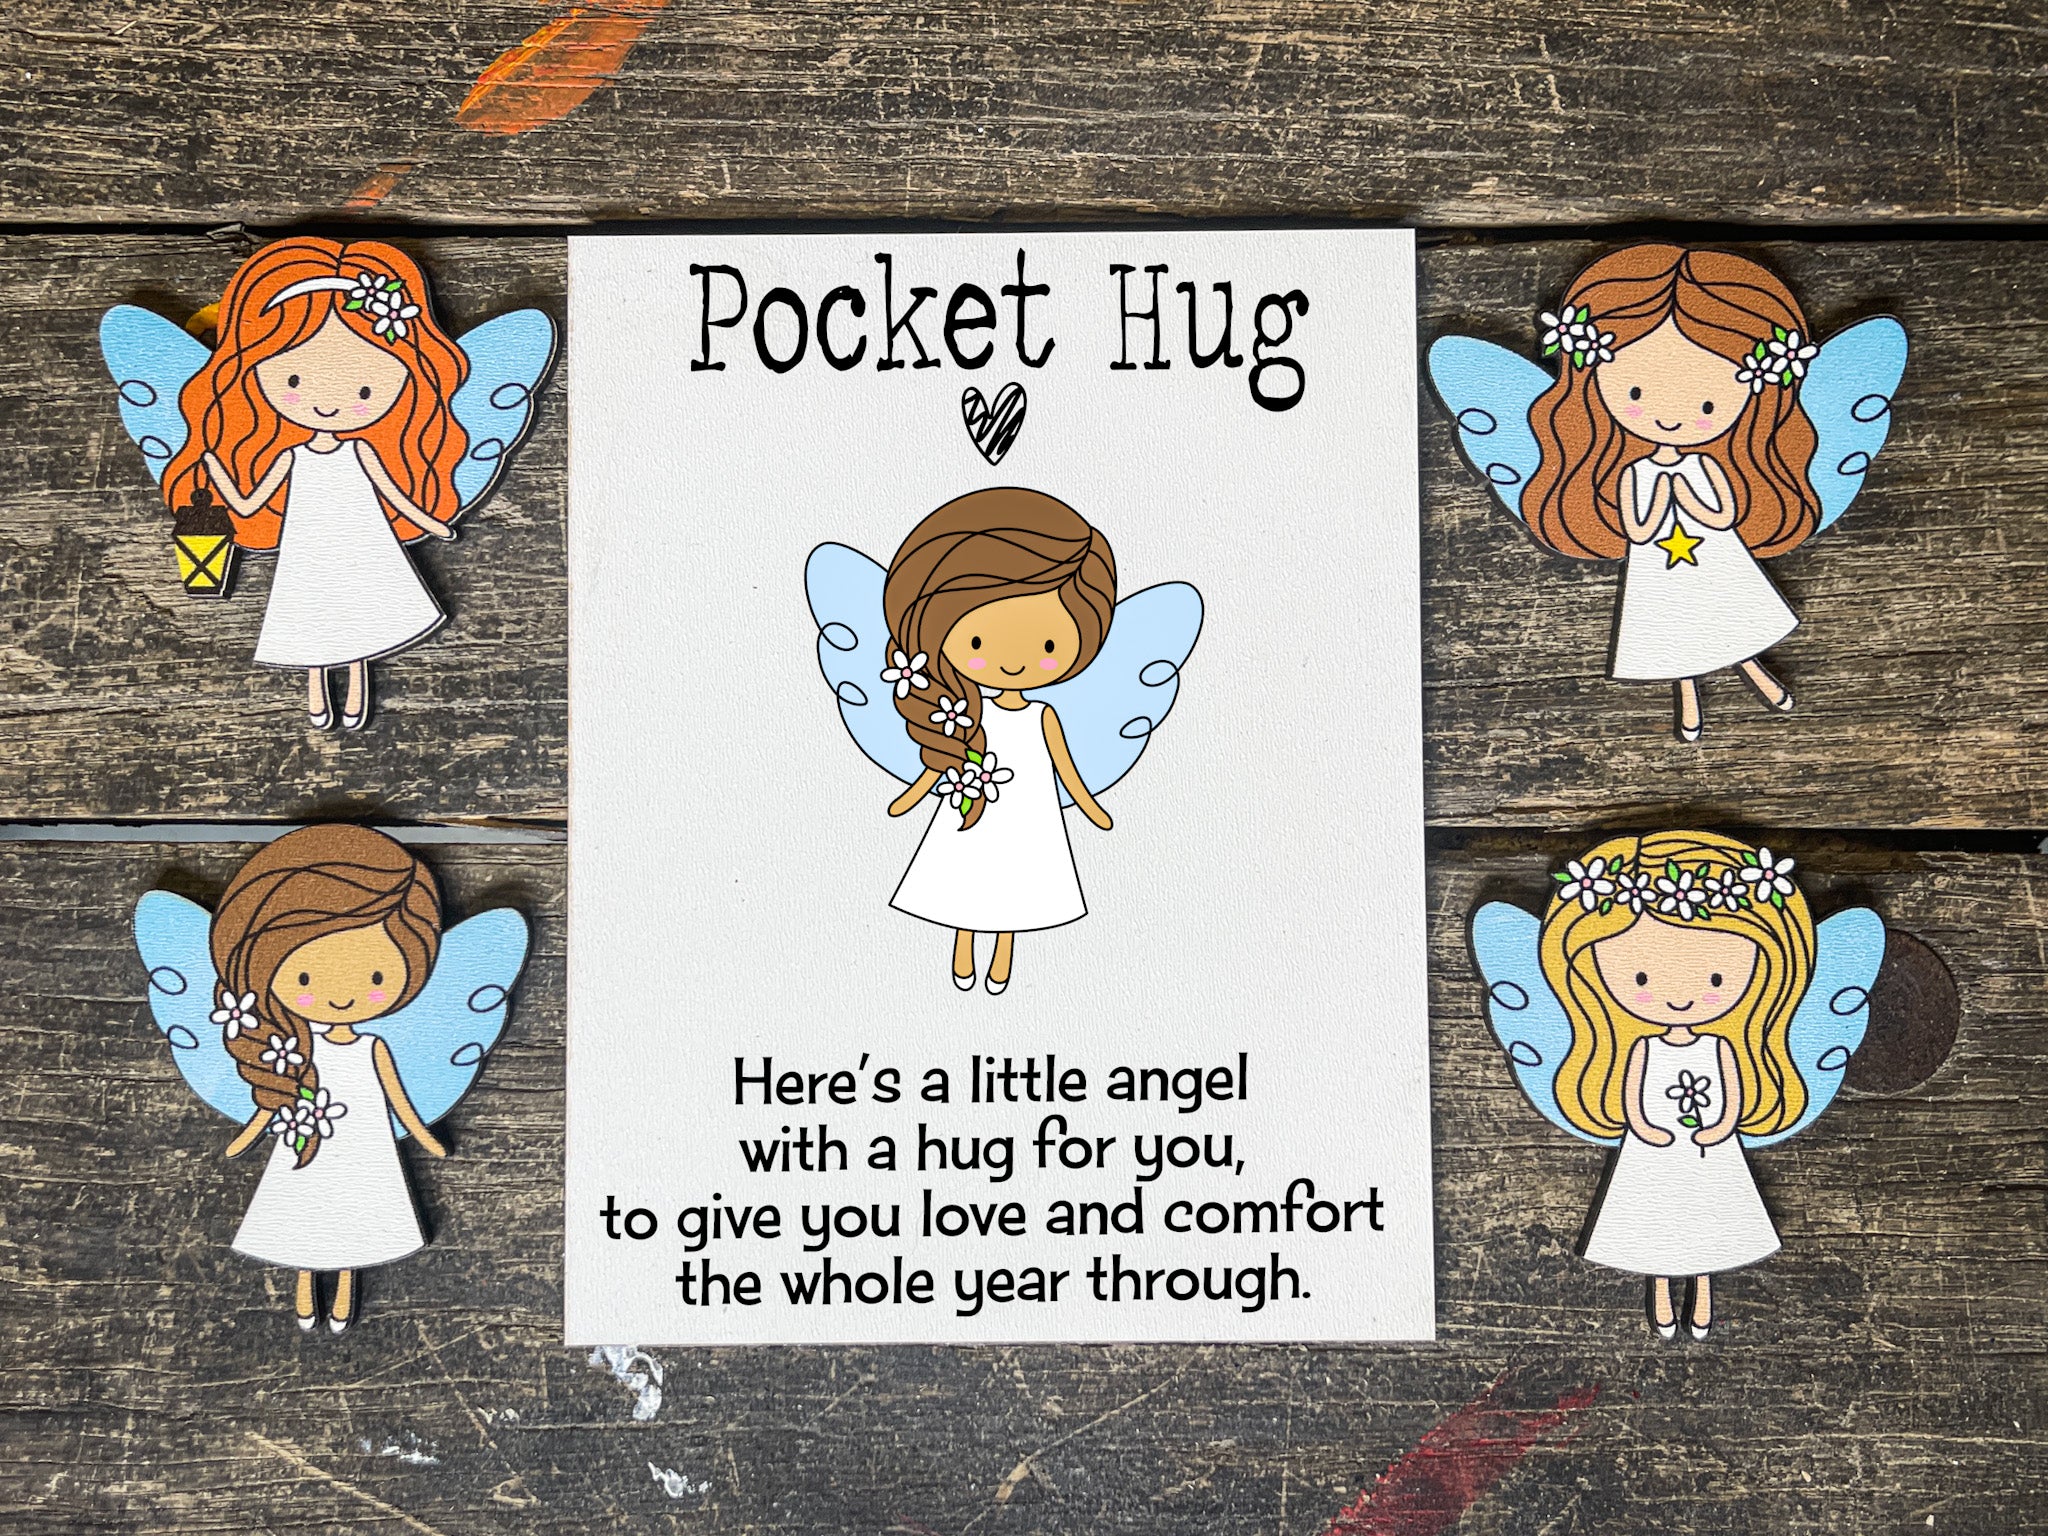 Little Pocket Hug - Just A Little Reminder You Are So Loved